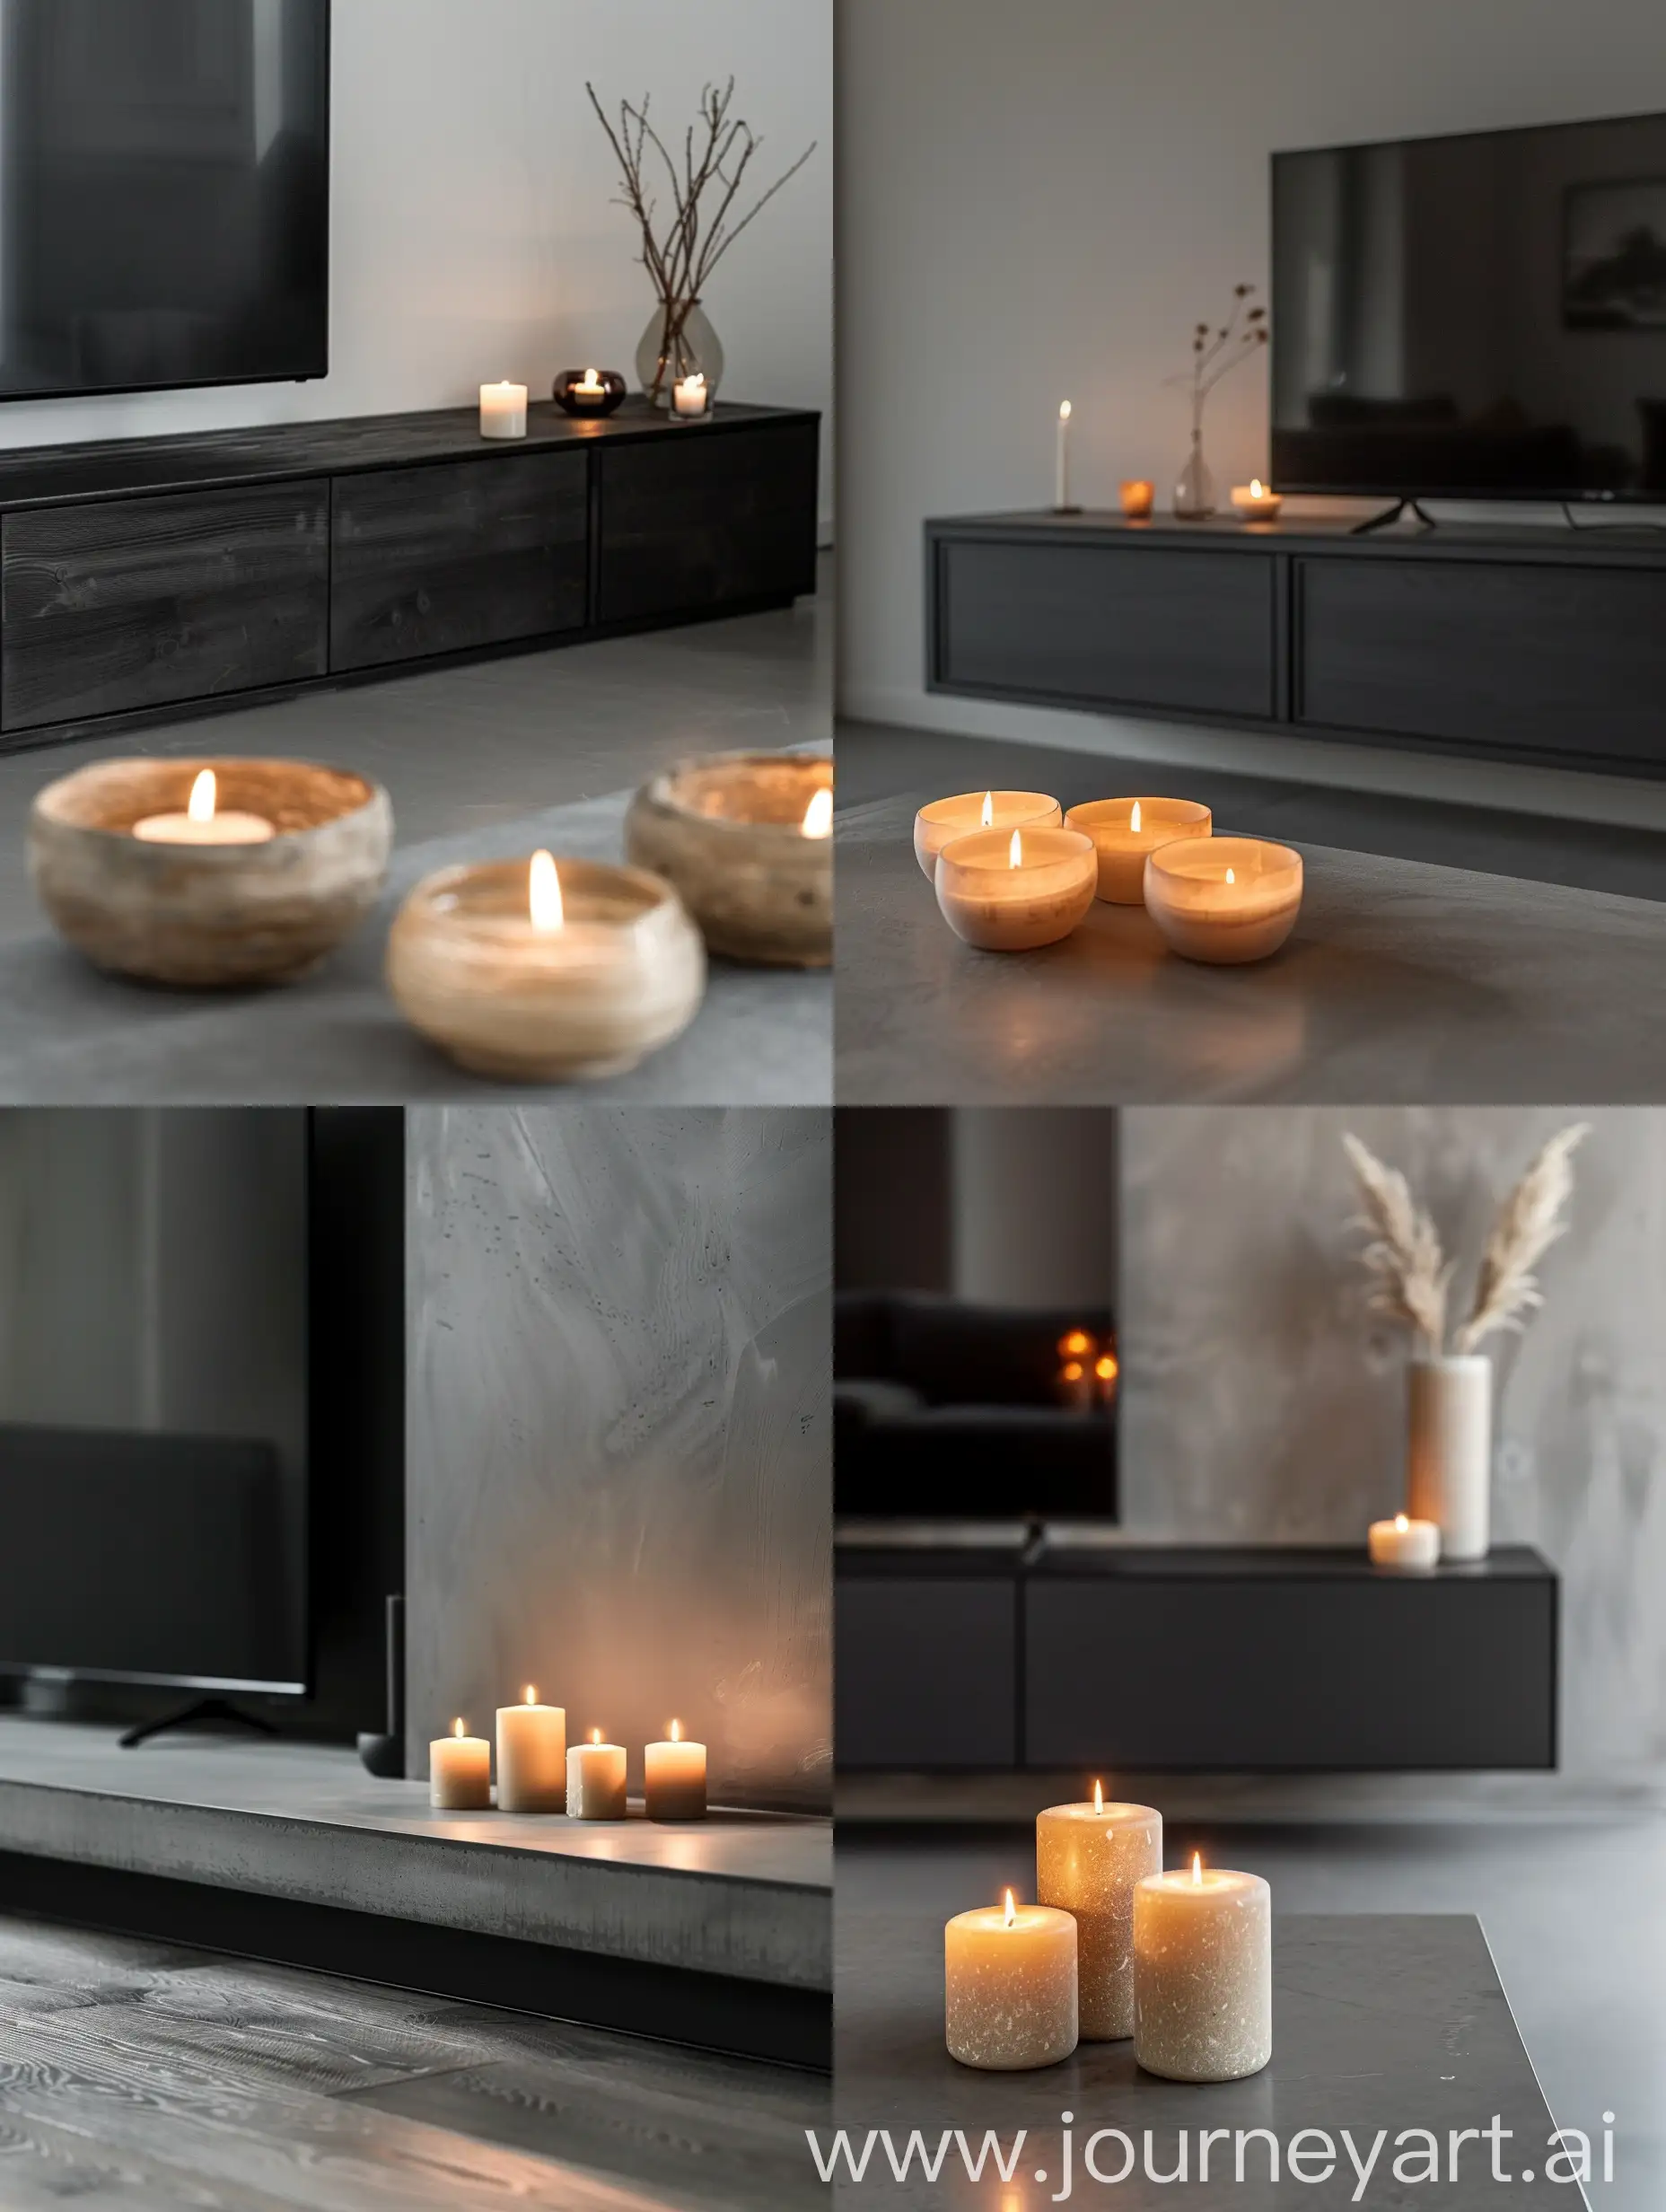 Dettaglio di un mobile TV  nero pavimento gres grigio candele beige accese stile scandinavo